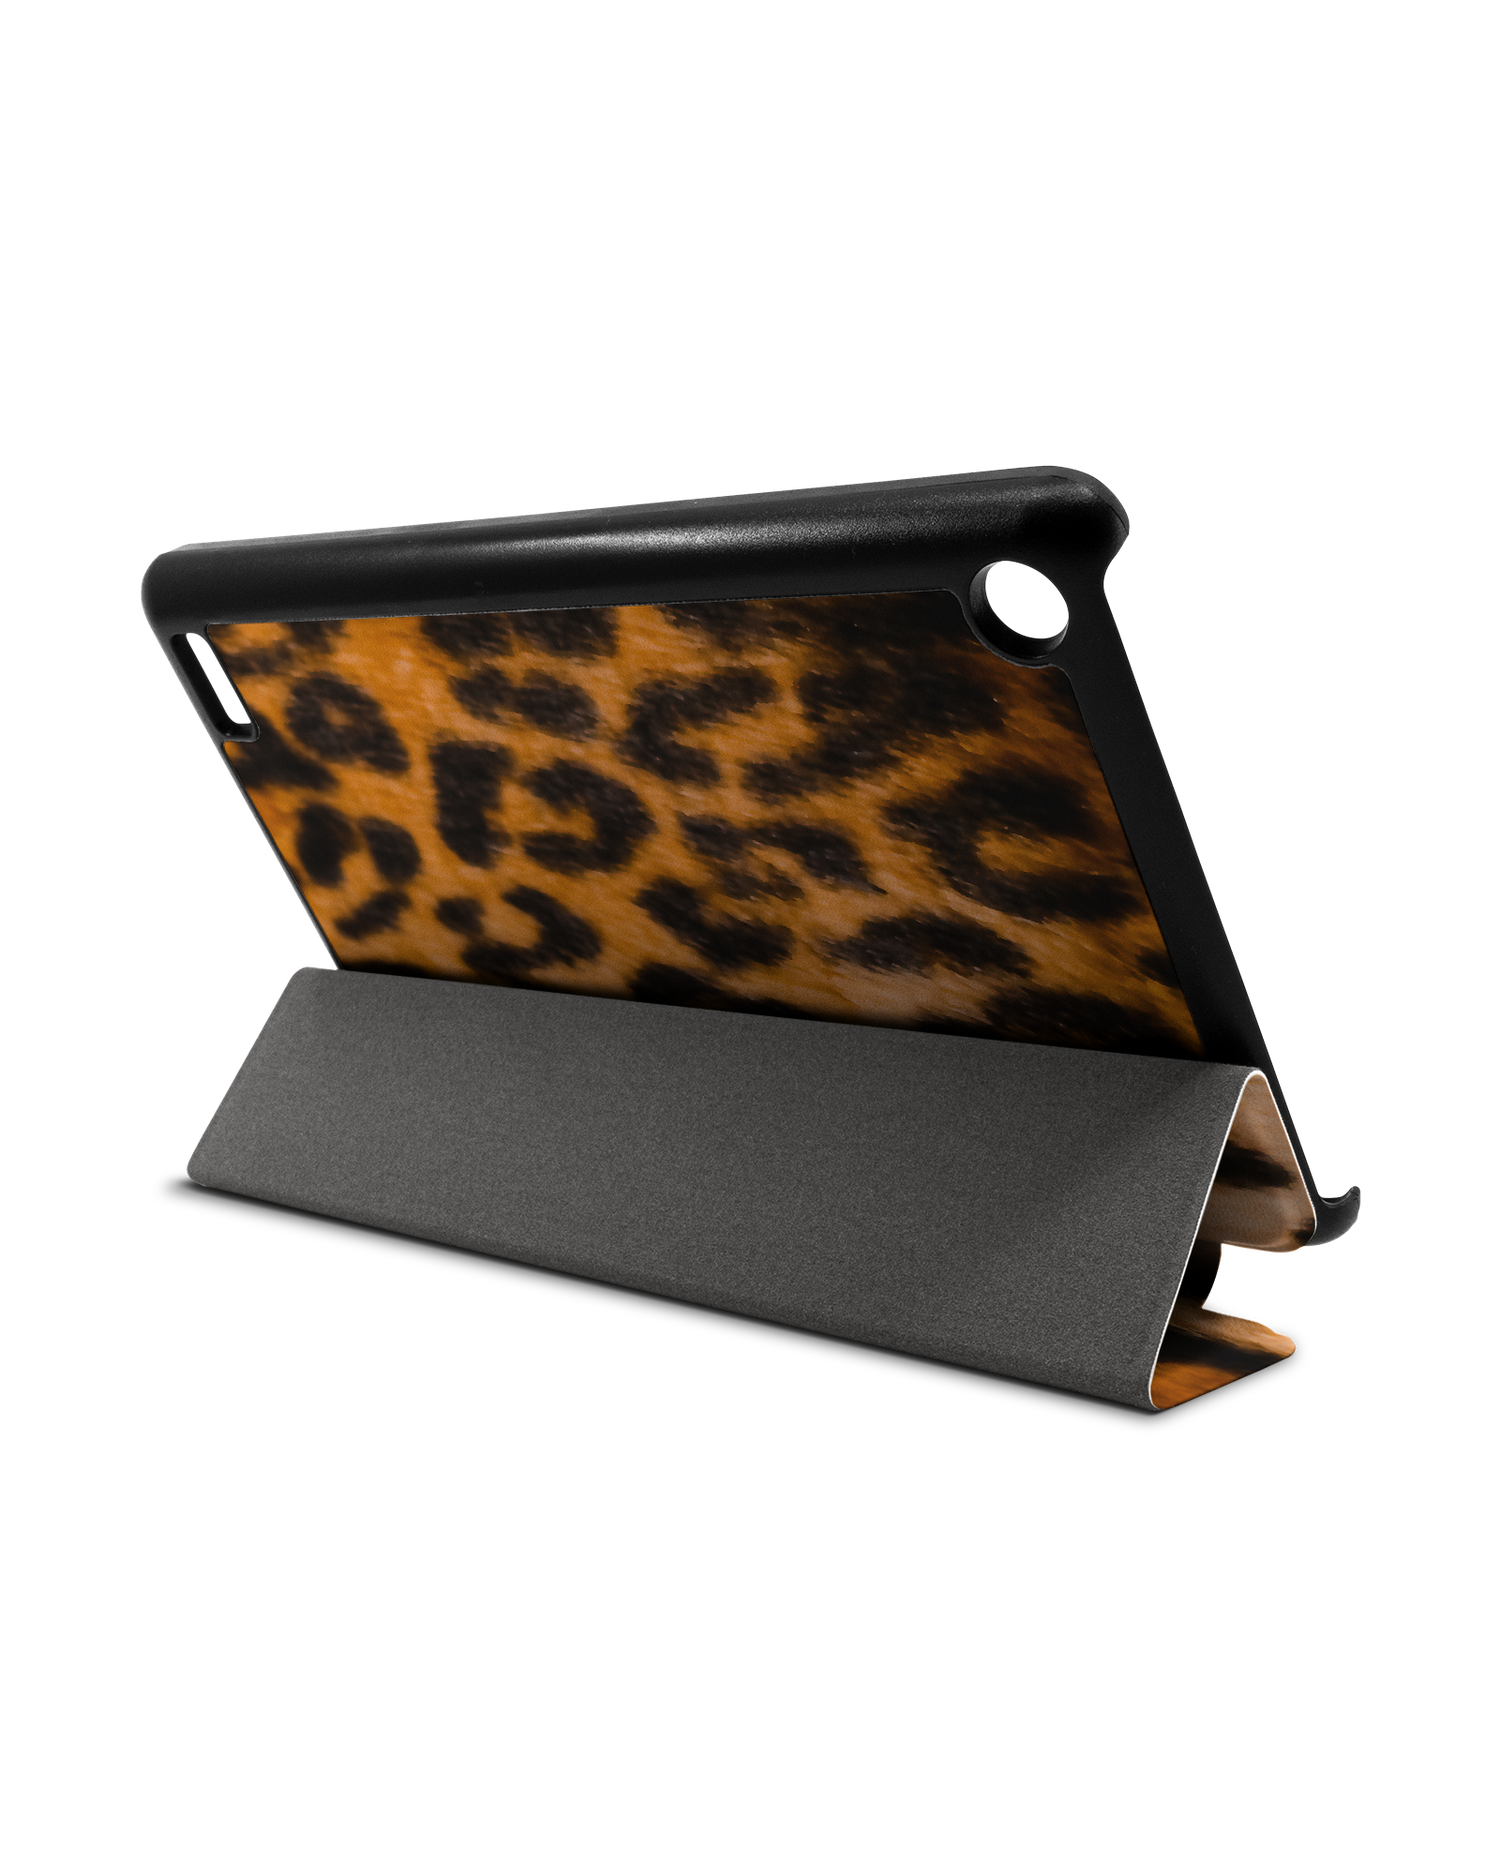 Leopard Pattern Tablet Smart Case für Amazon Fire 7: Aufgestellt im Querformat